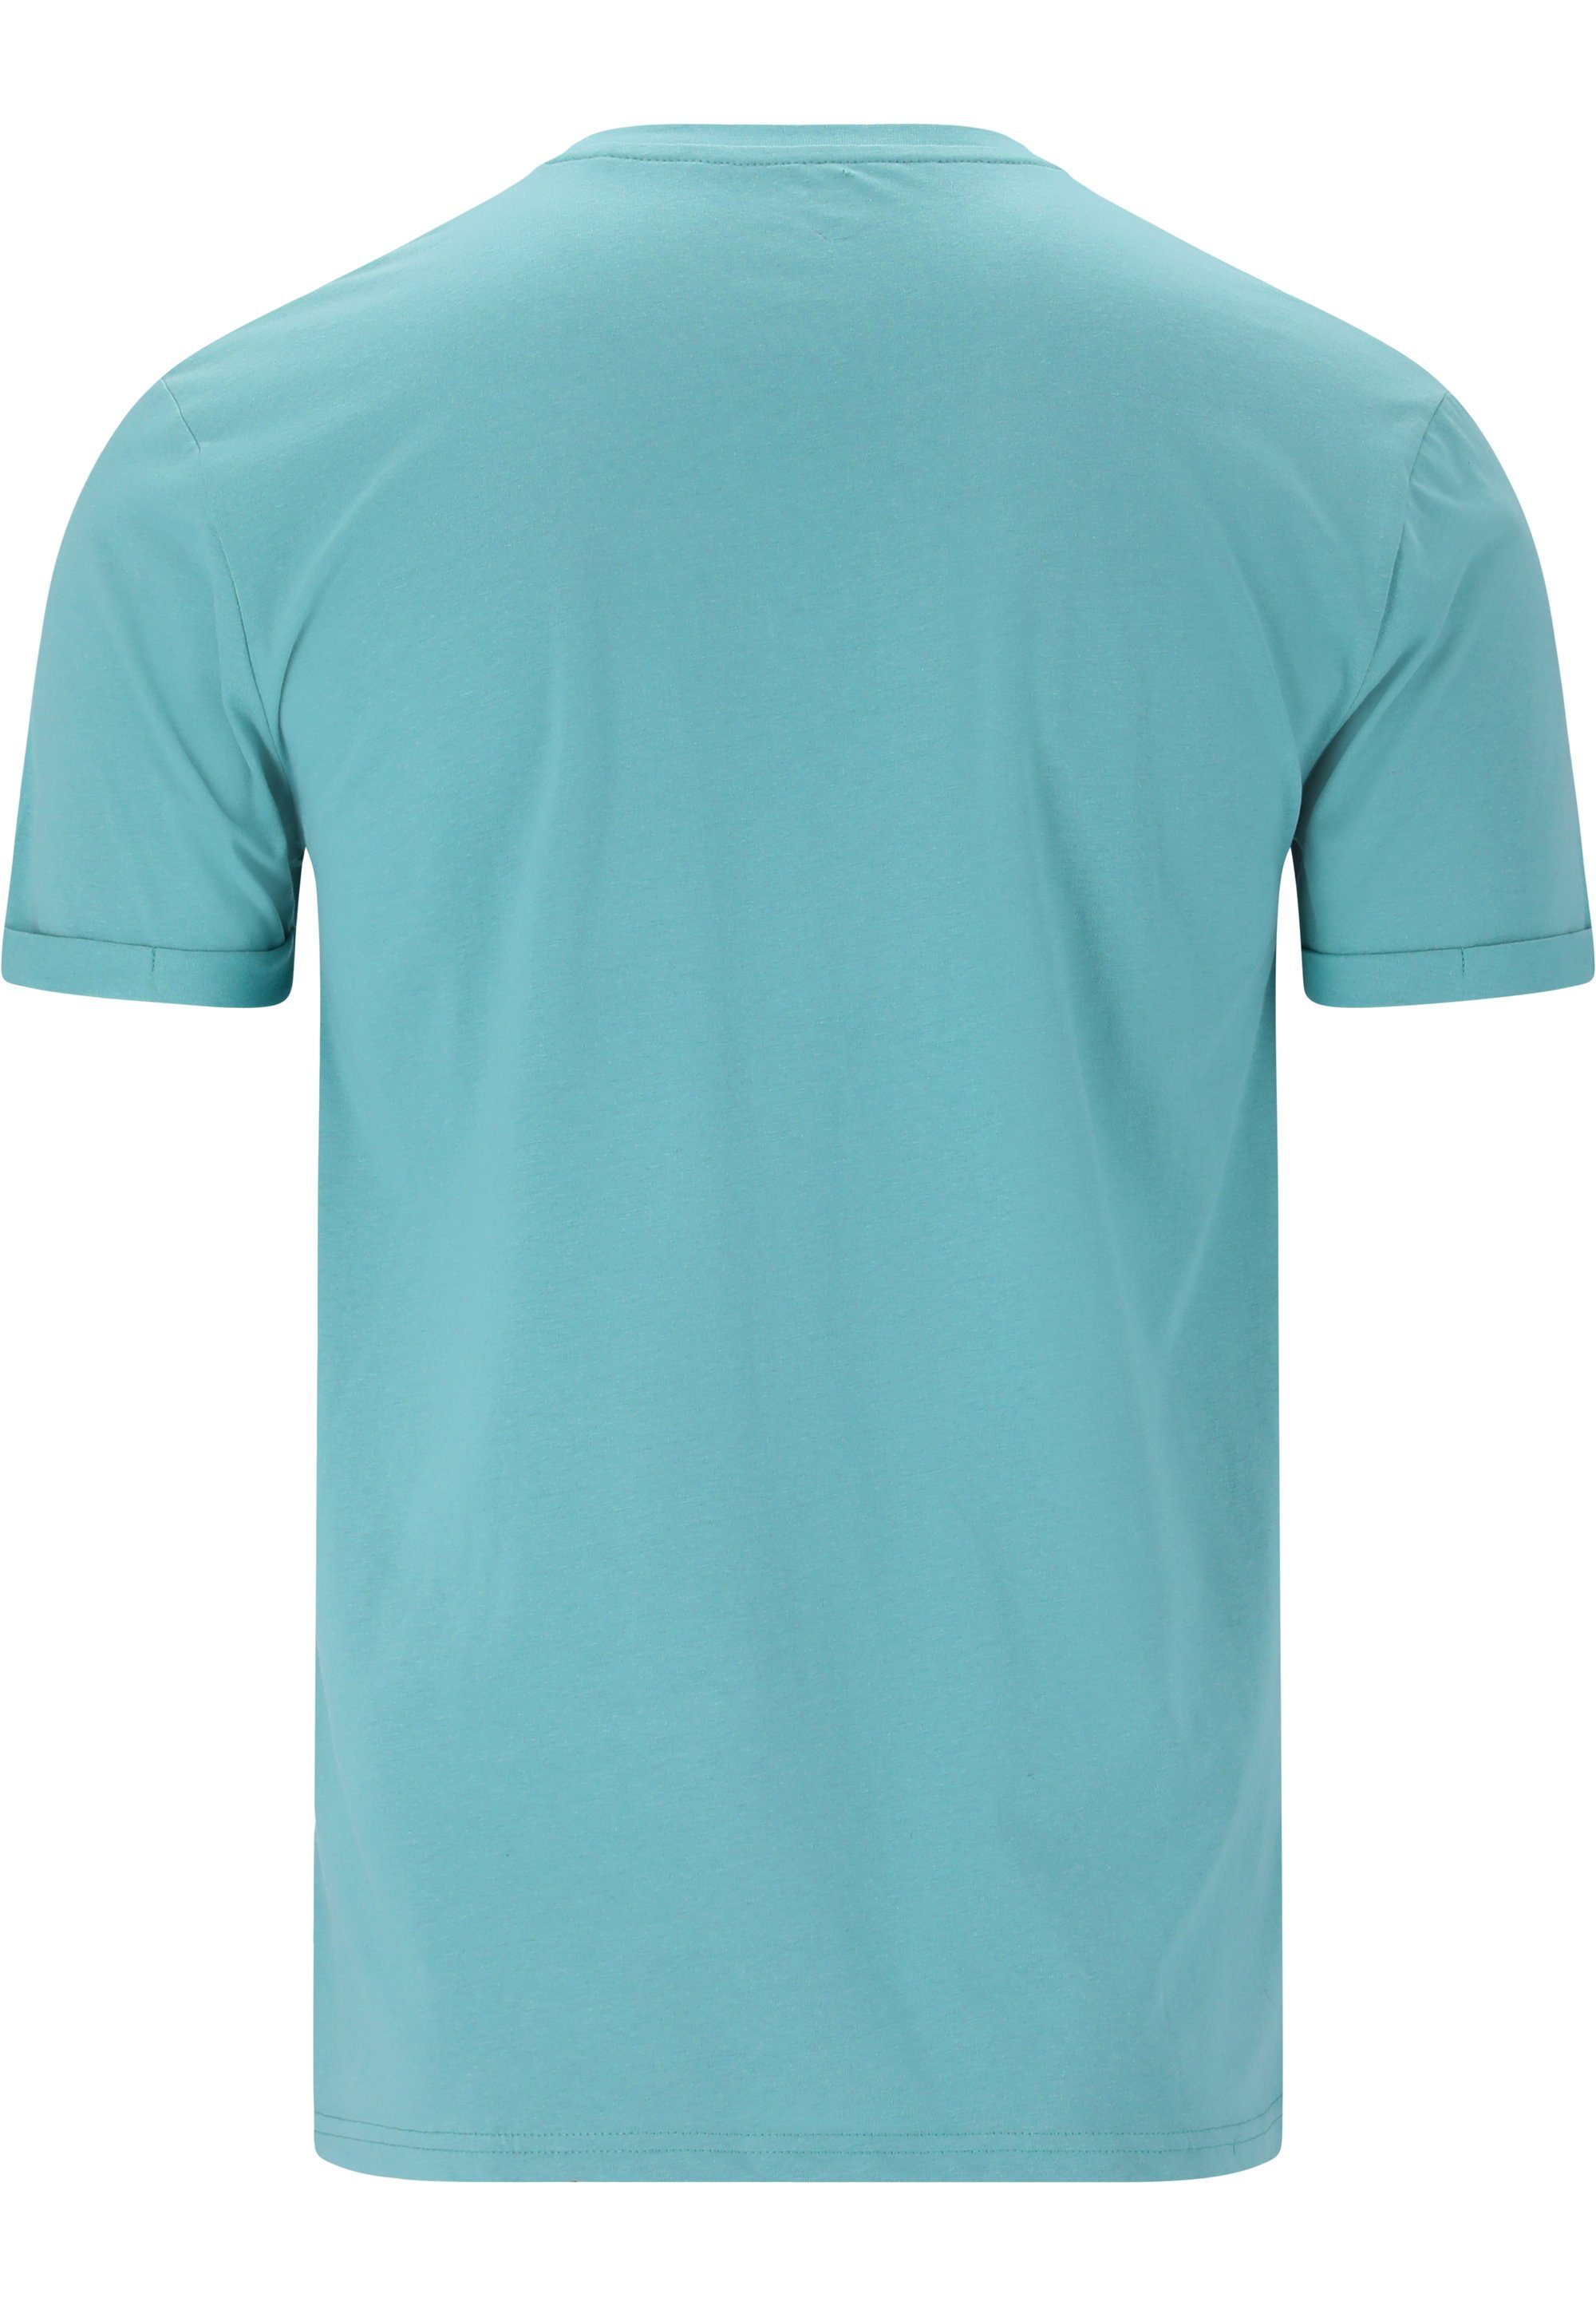 T-Shirt blau CRUZ im Thomsson sommerlichen Design